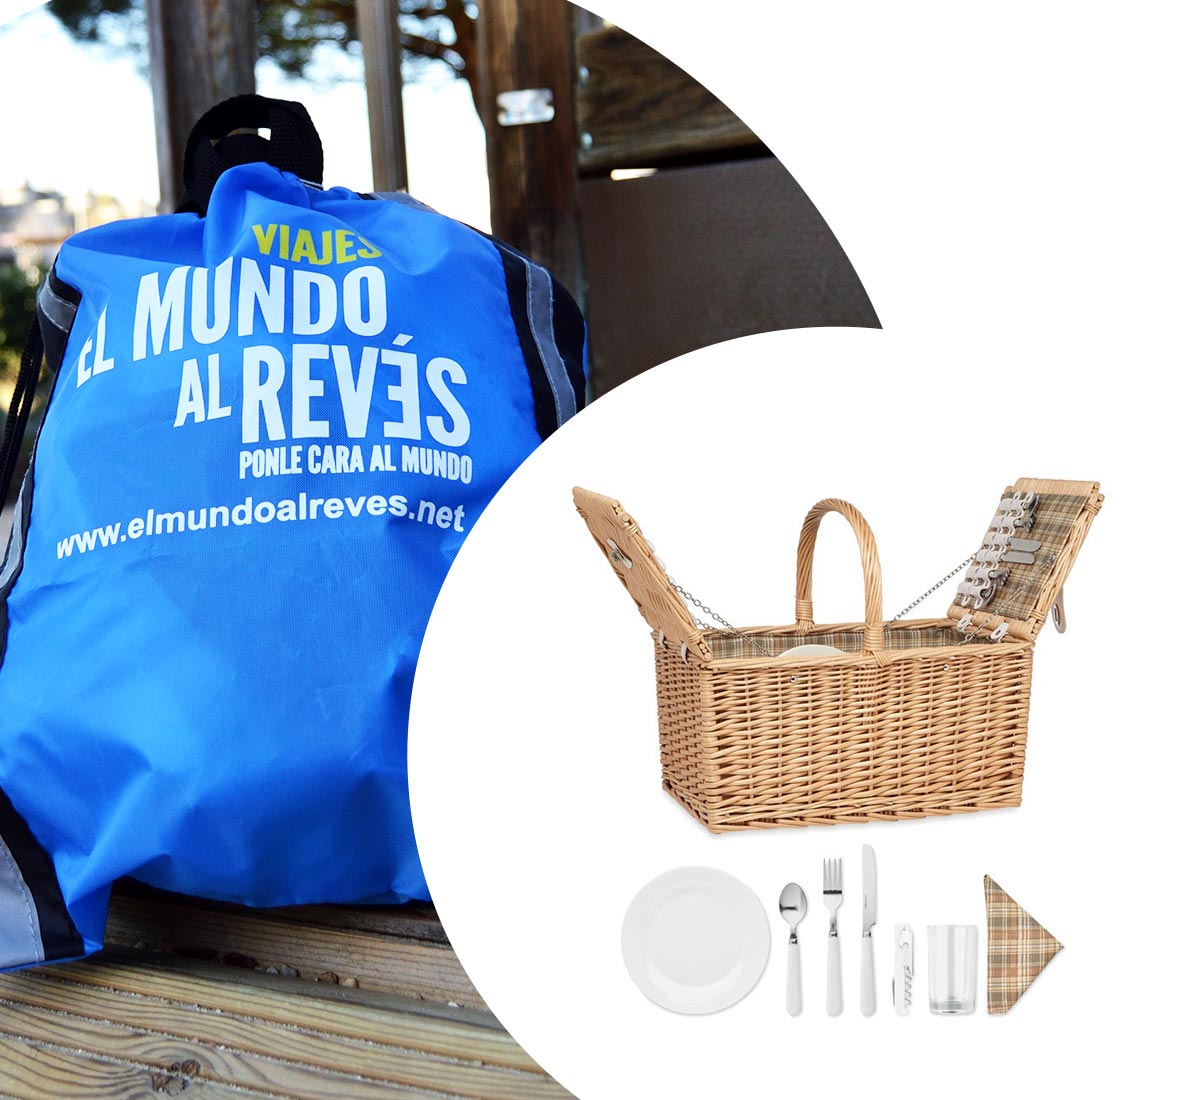 Bolsa publicitaria azul de cuerdas y cesta de picnic personalizada con logotipos y mensajes comerciales, hechas por Alvaroman, para publicidad y promoción en primavera